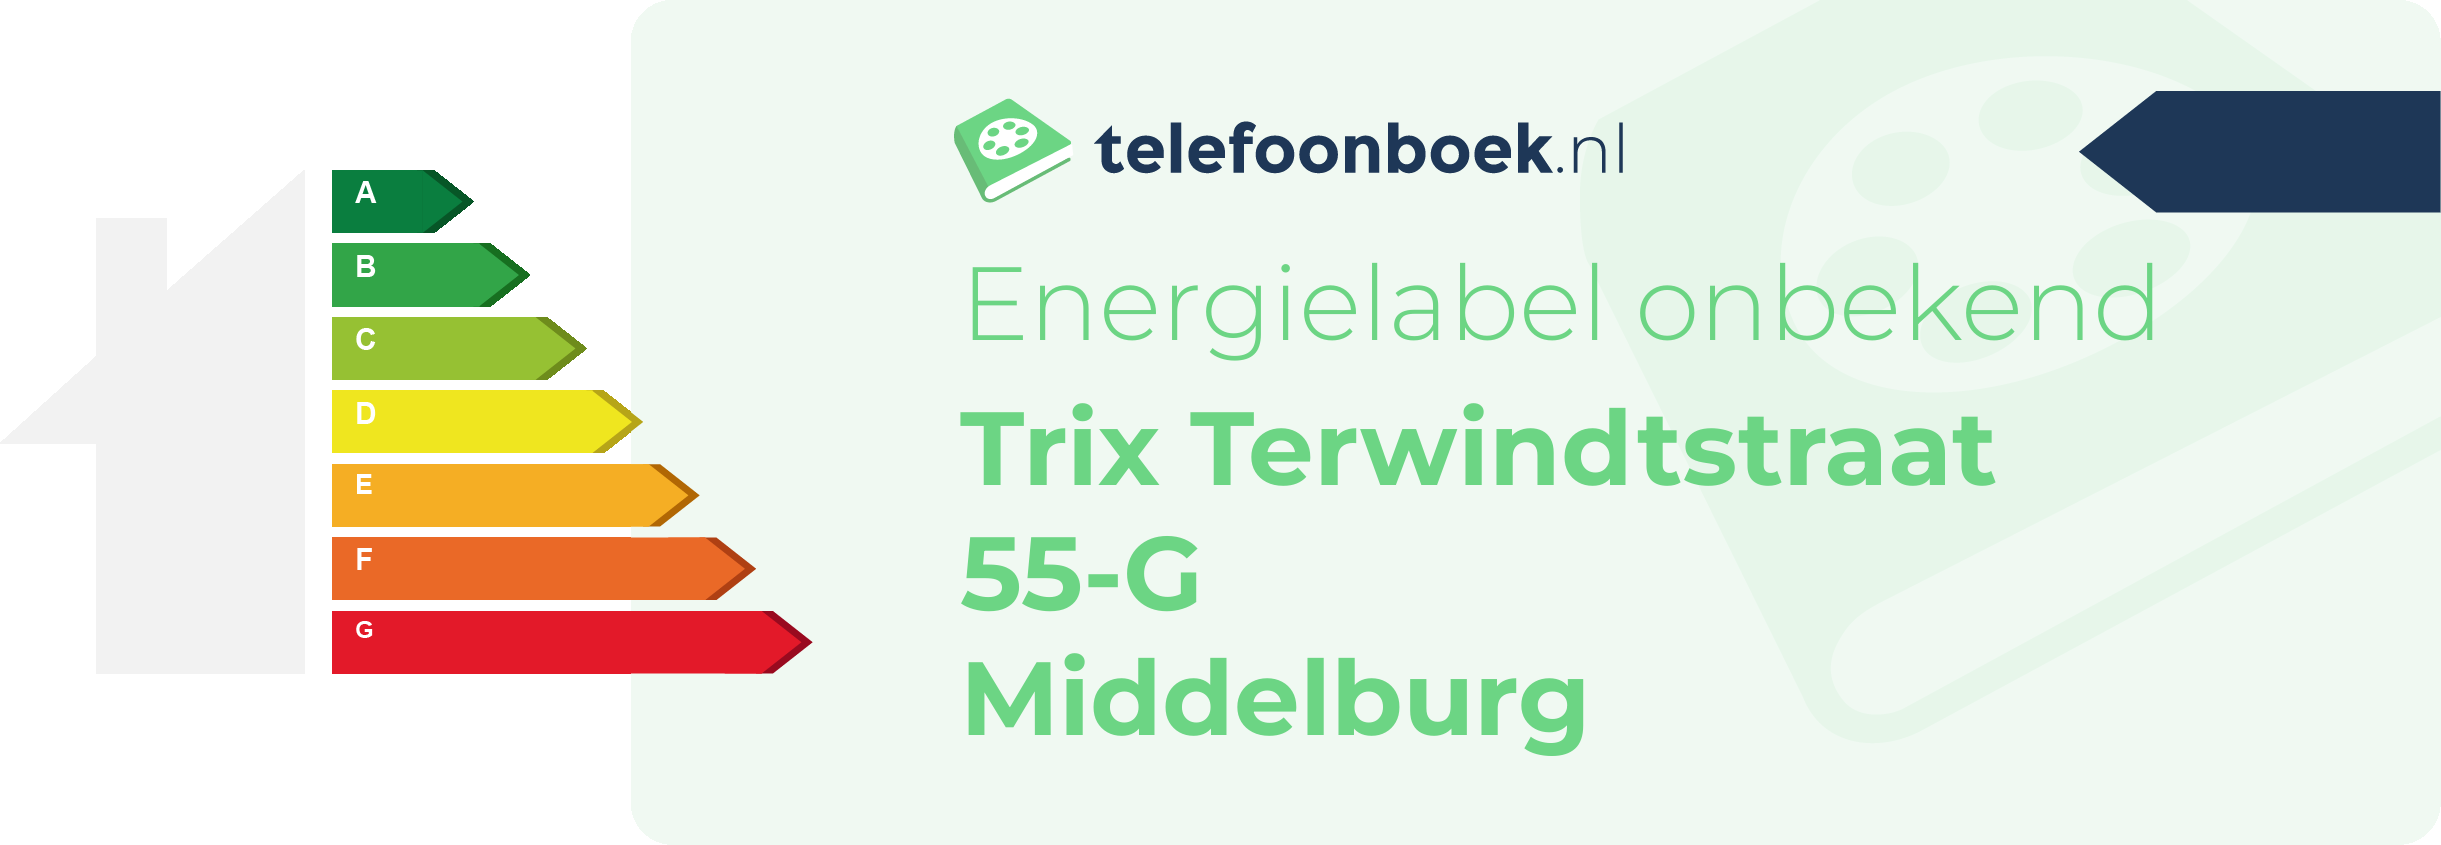 Energielabel Trix Terwindtstraat 55-G Middelburg